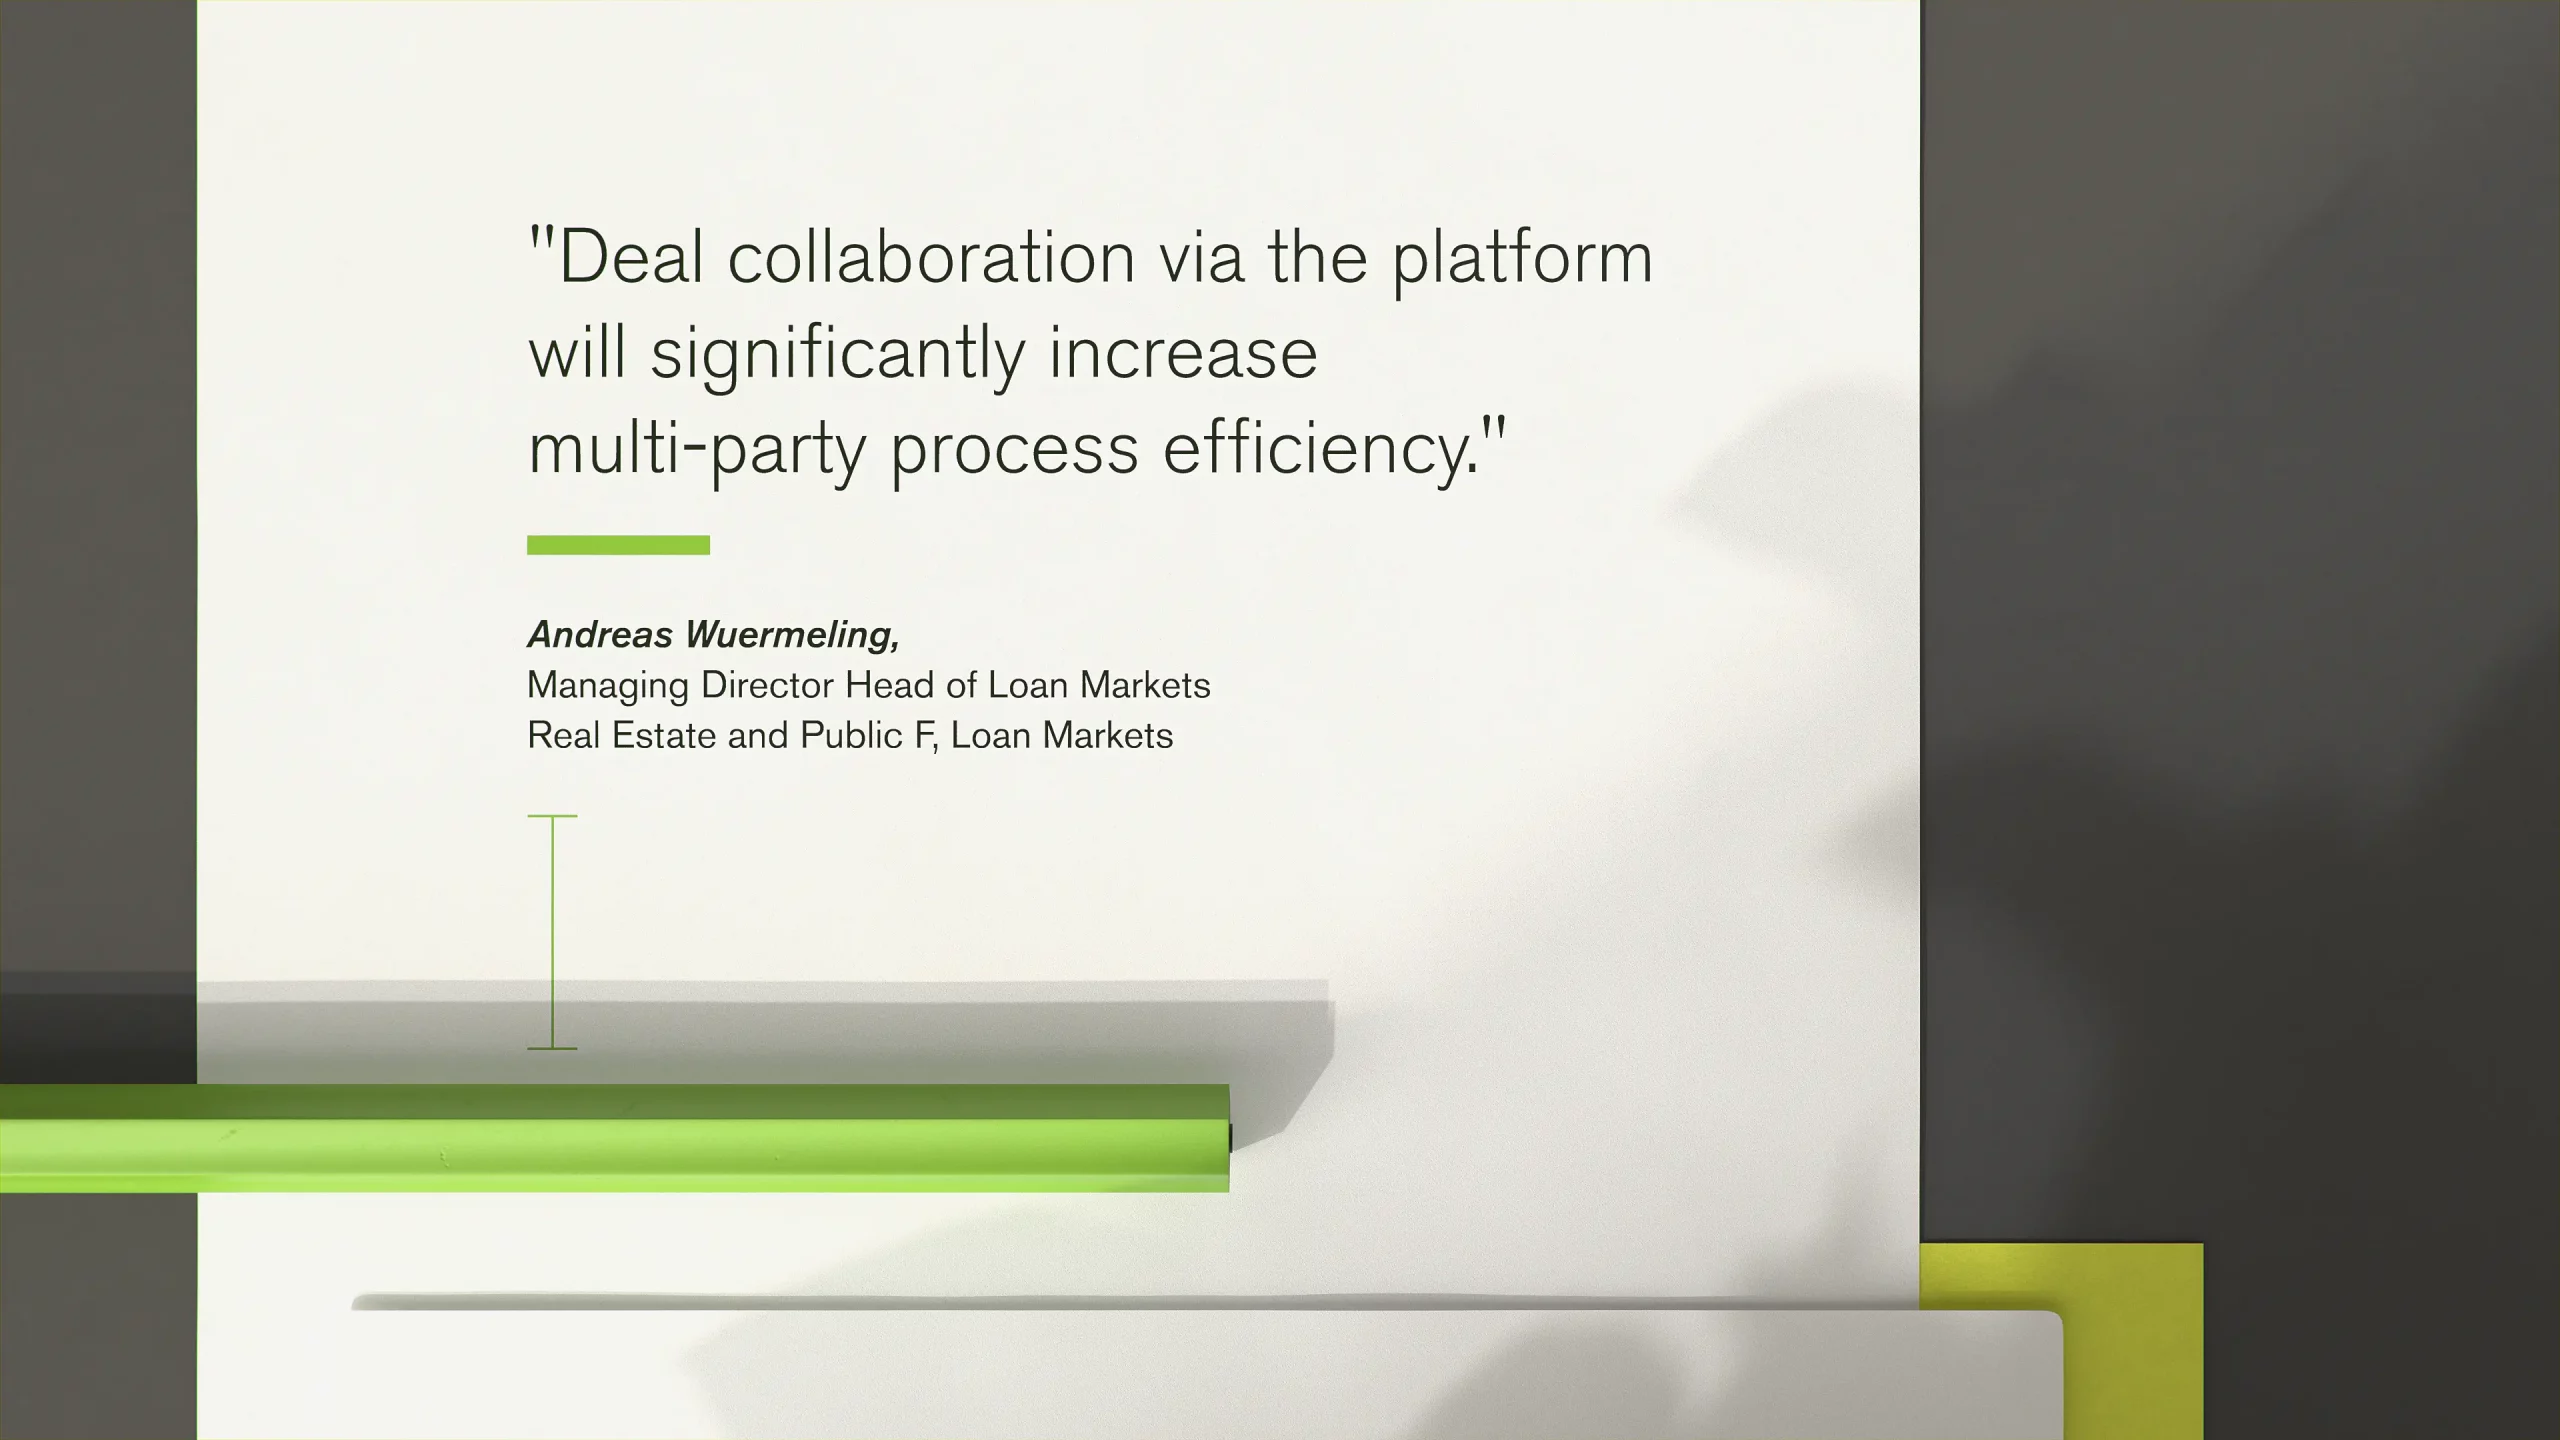 Zitierter Text über die Vorteile der Plattform zur Verbesserung der Prozess-Effizienz bei Multi-Party-Deals.